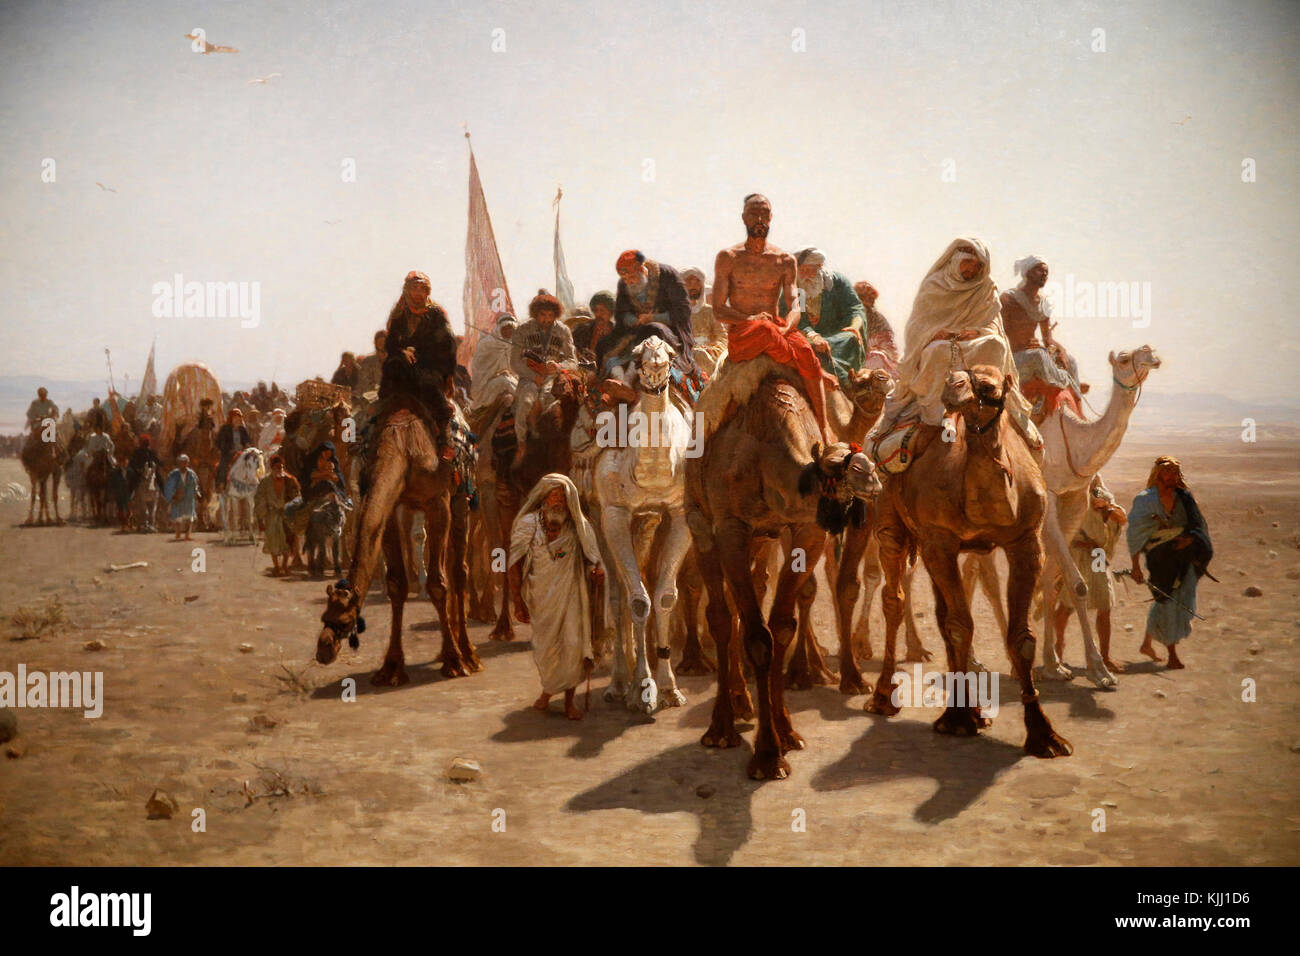 Musée d'Orsay, Paris. Leon Belly. Les pèlerins qui se rendent à La Mecque. Huile sur toile. 1861. La France. Banque D'Images